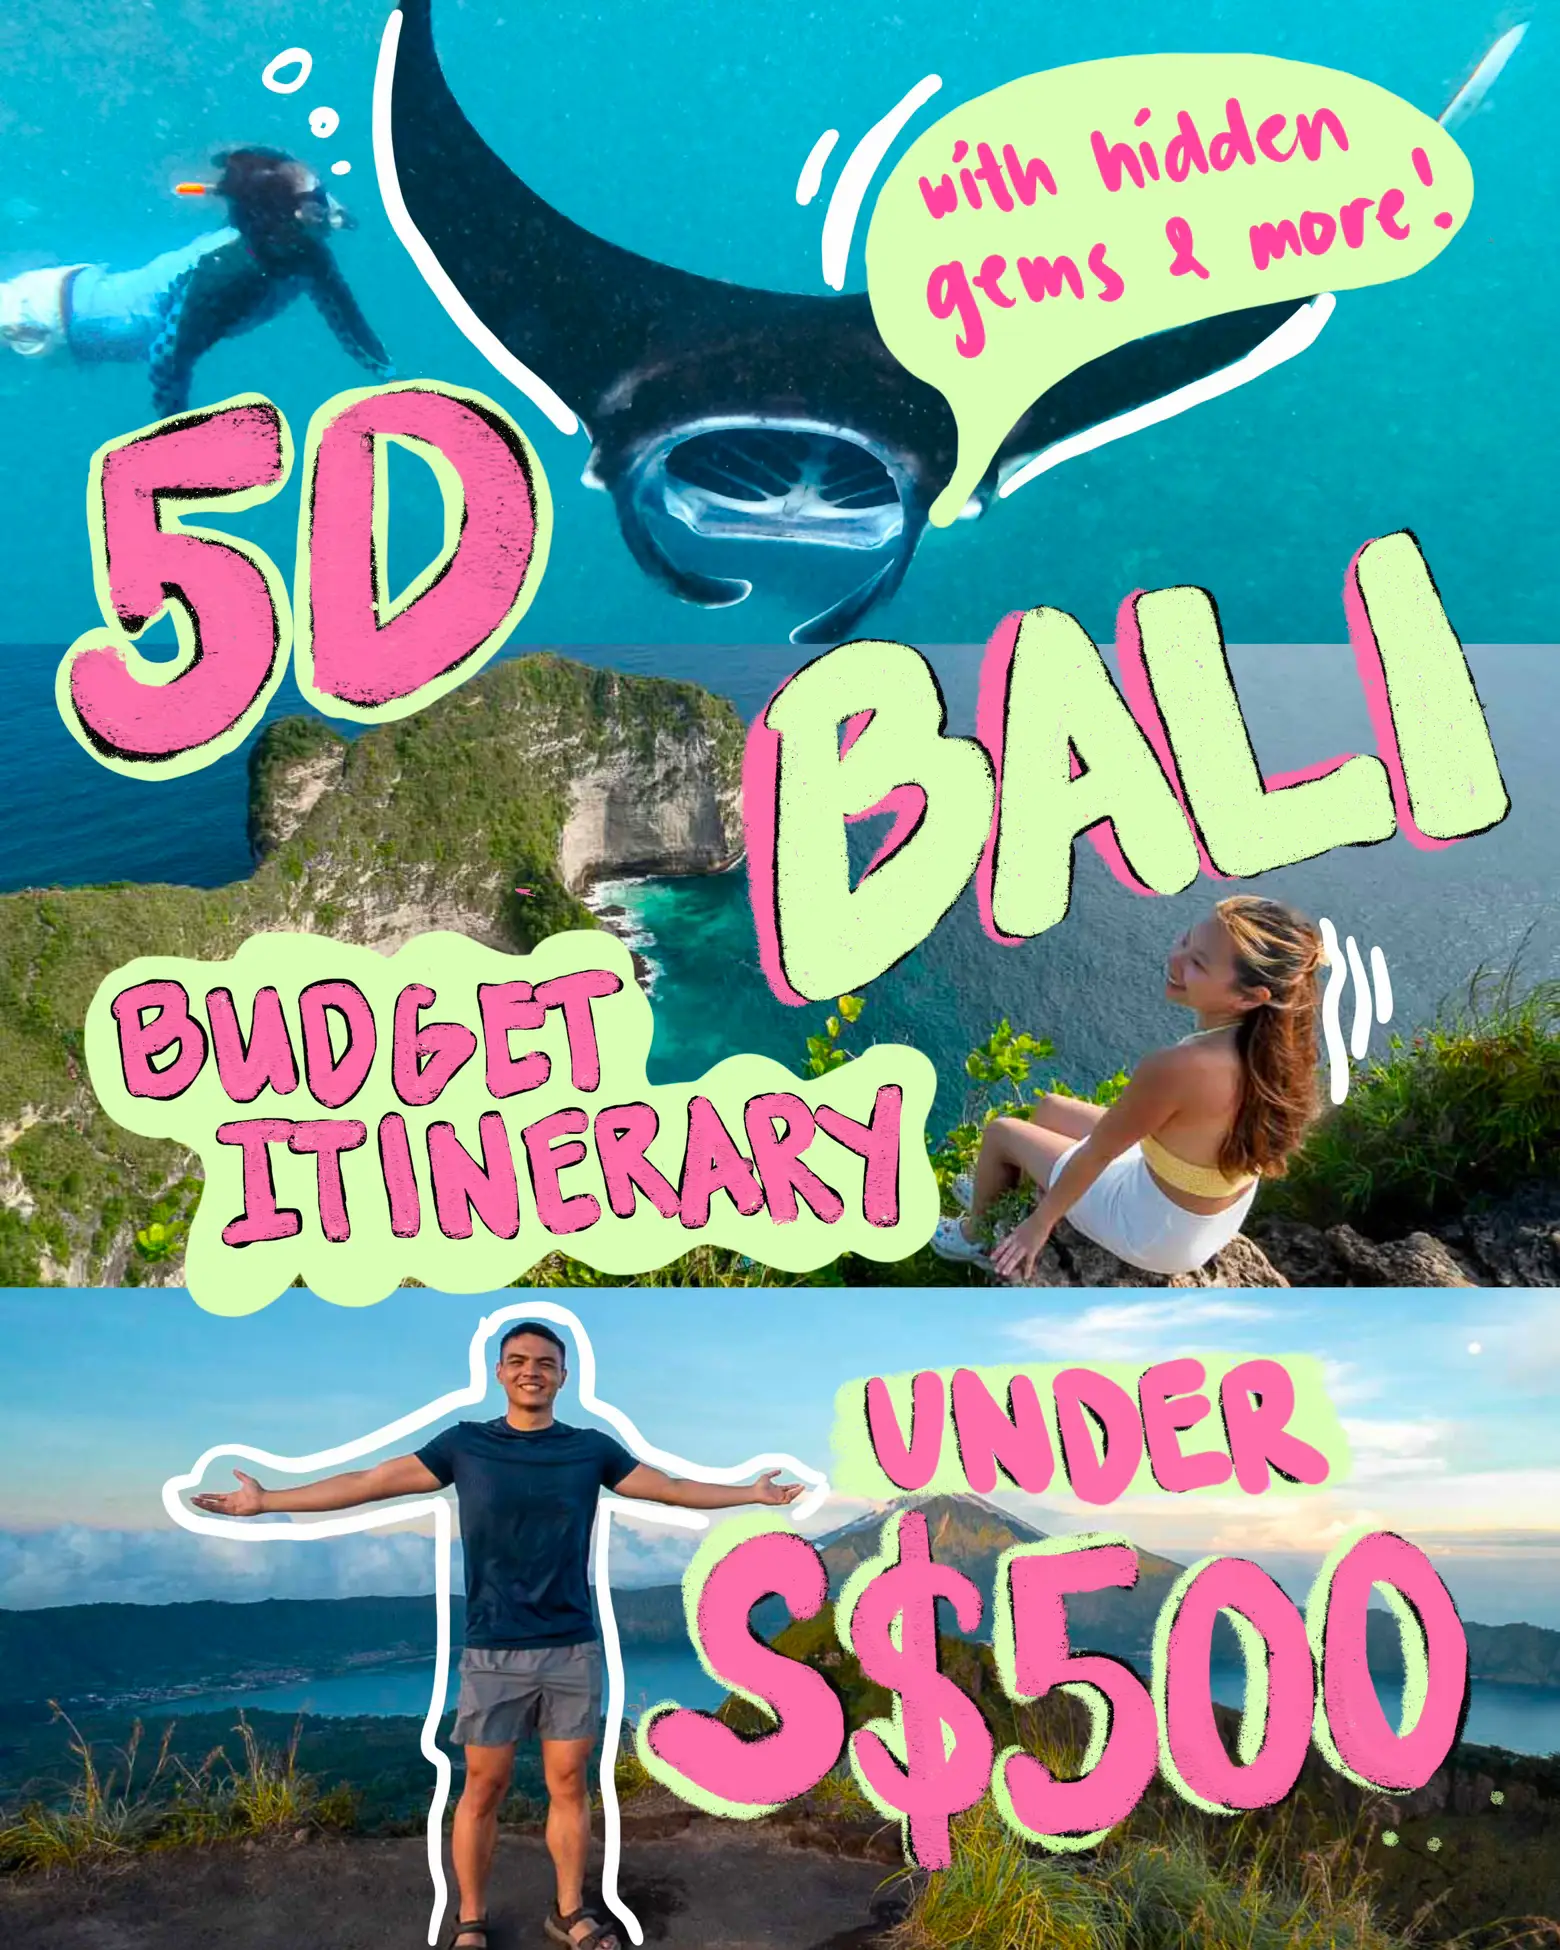 5D Bali Budget Itin <S$500 💸 (hidden gems & more!)'s images(0)